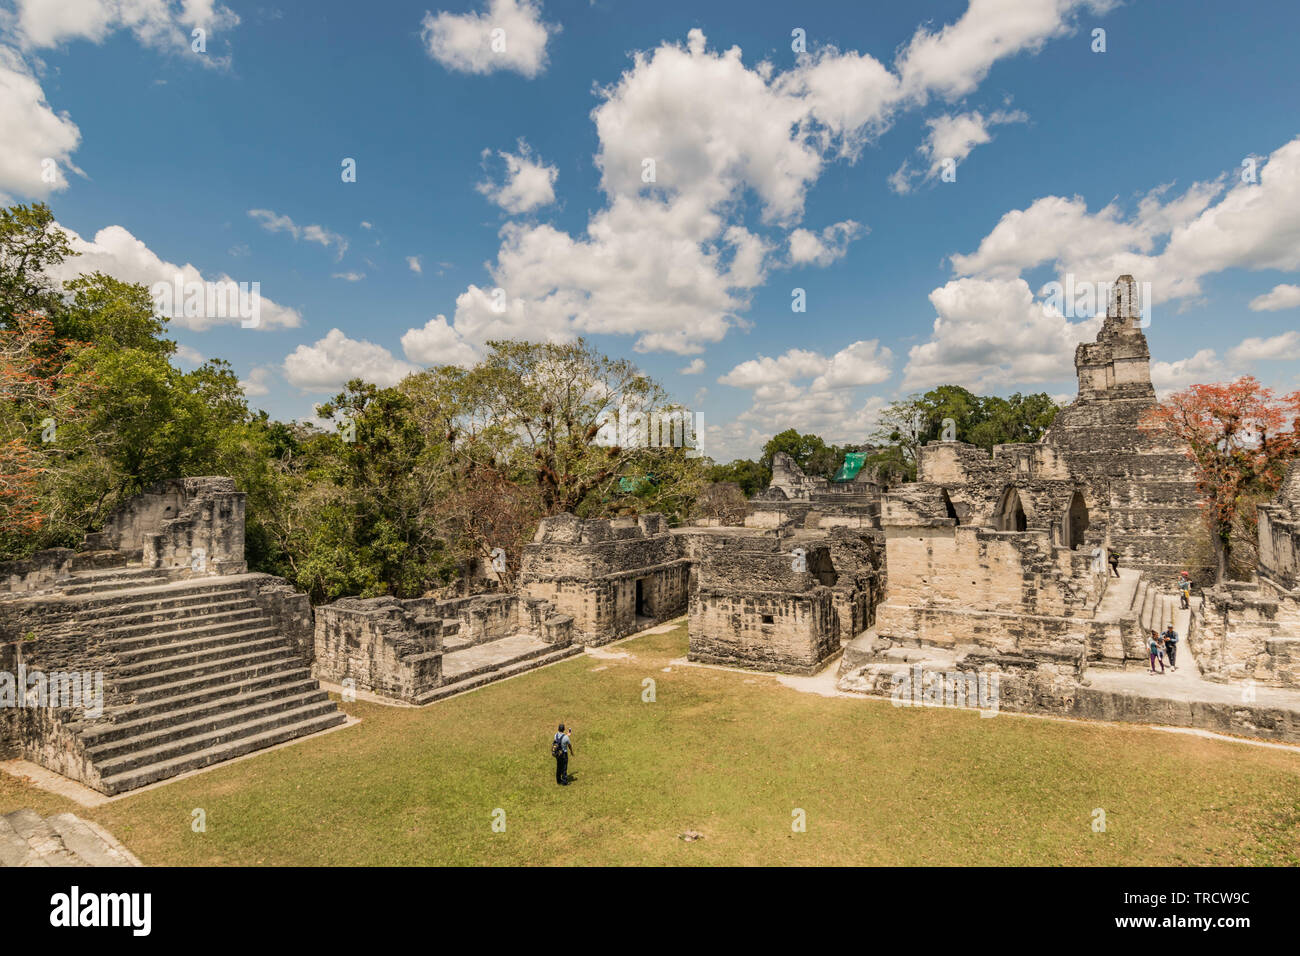 Ancient Mayan Pyramids at Tikal National Park, in Guatemala Stock Photo